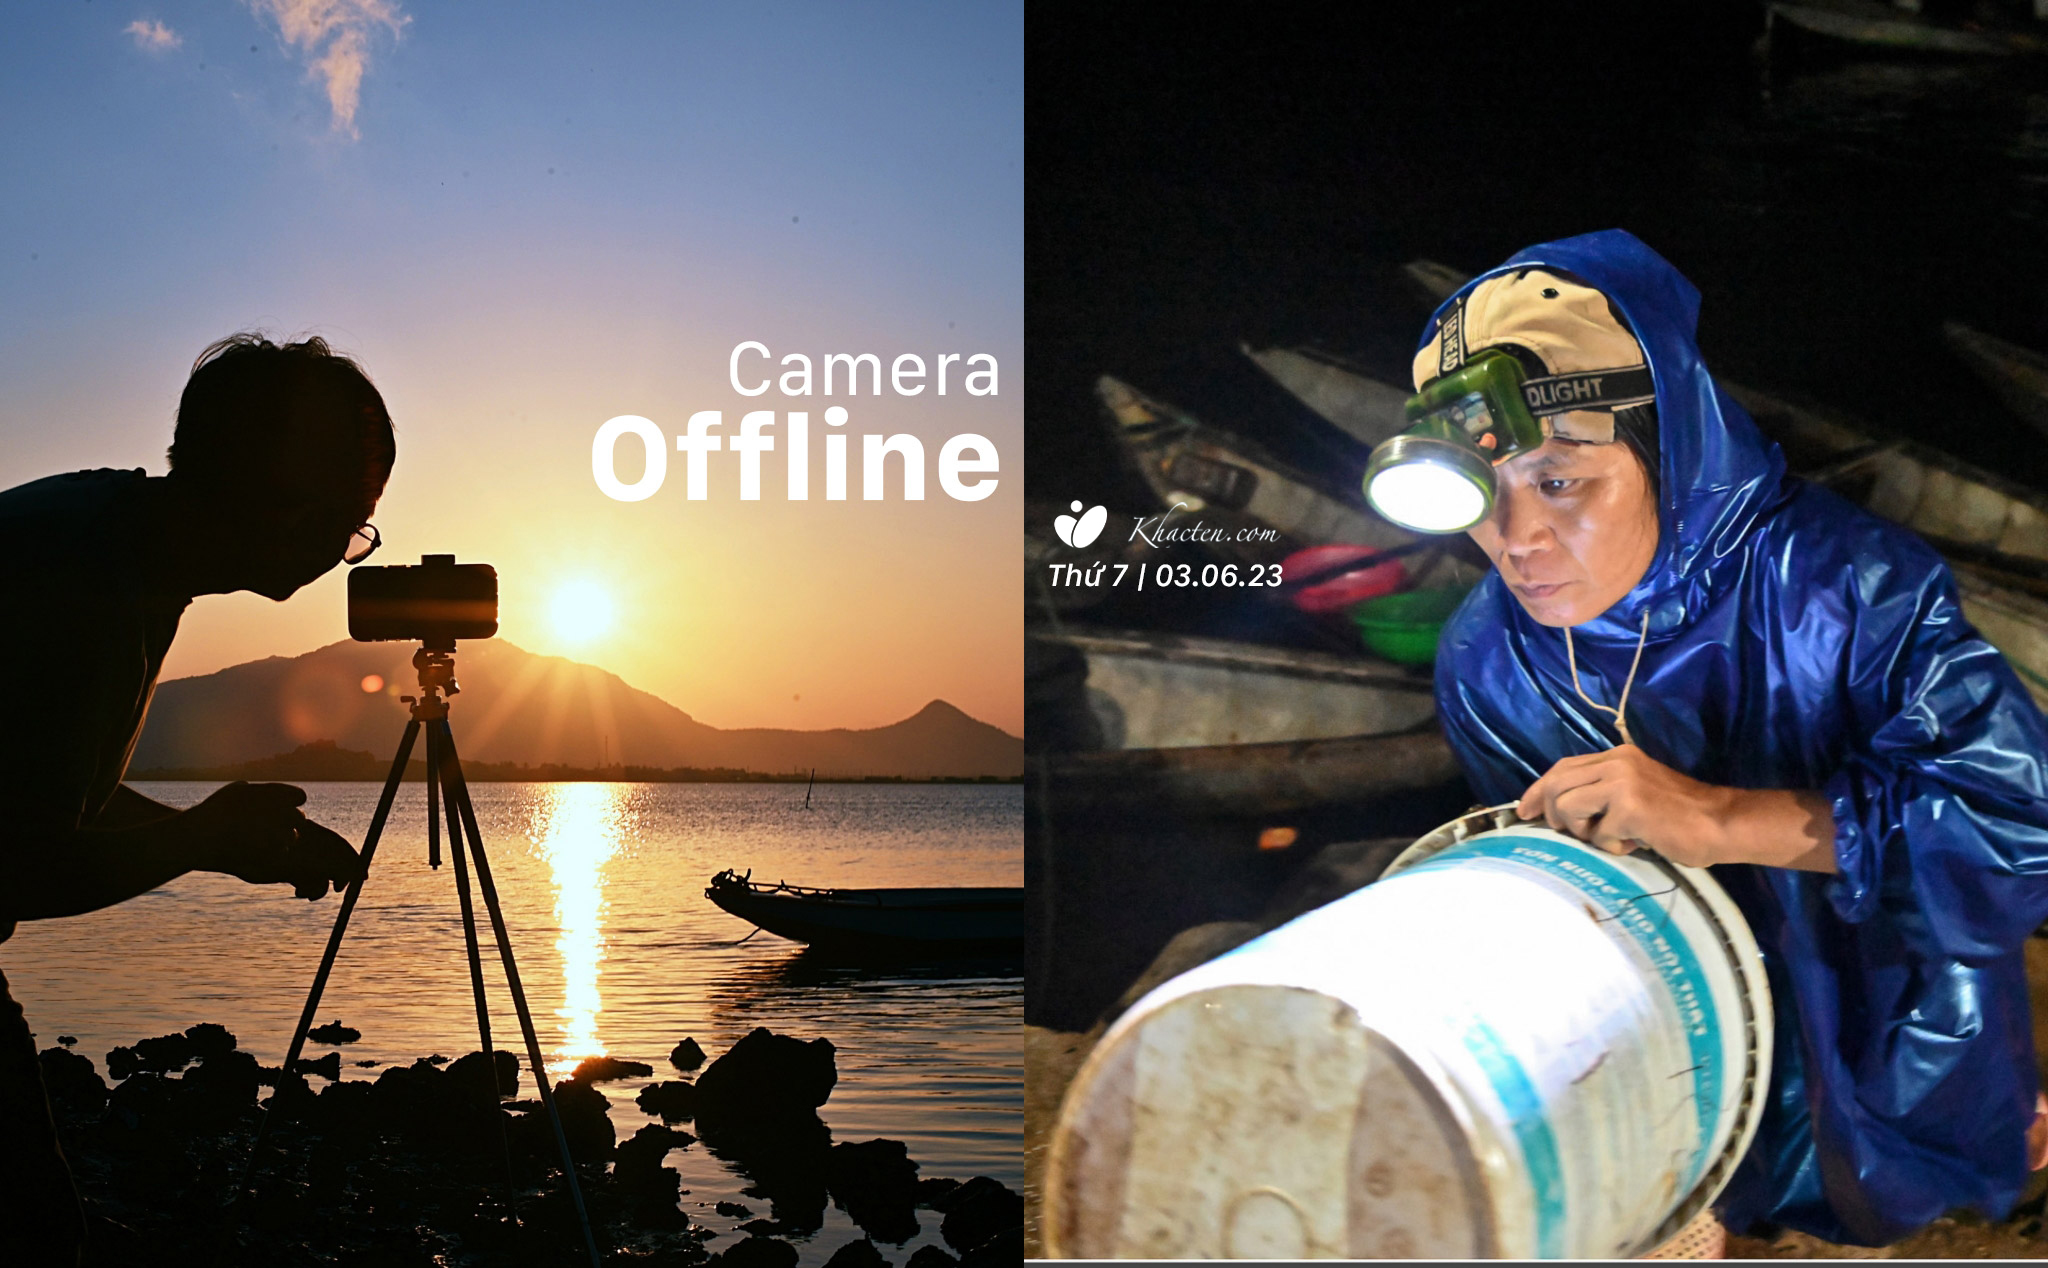 Offline camera làm chủ thiết bị chụp ảnh với anh @Tuanlionsg